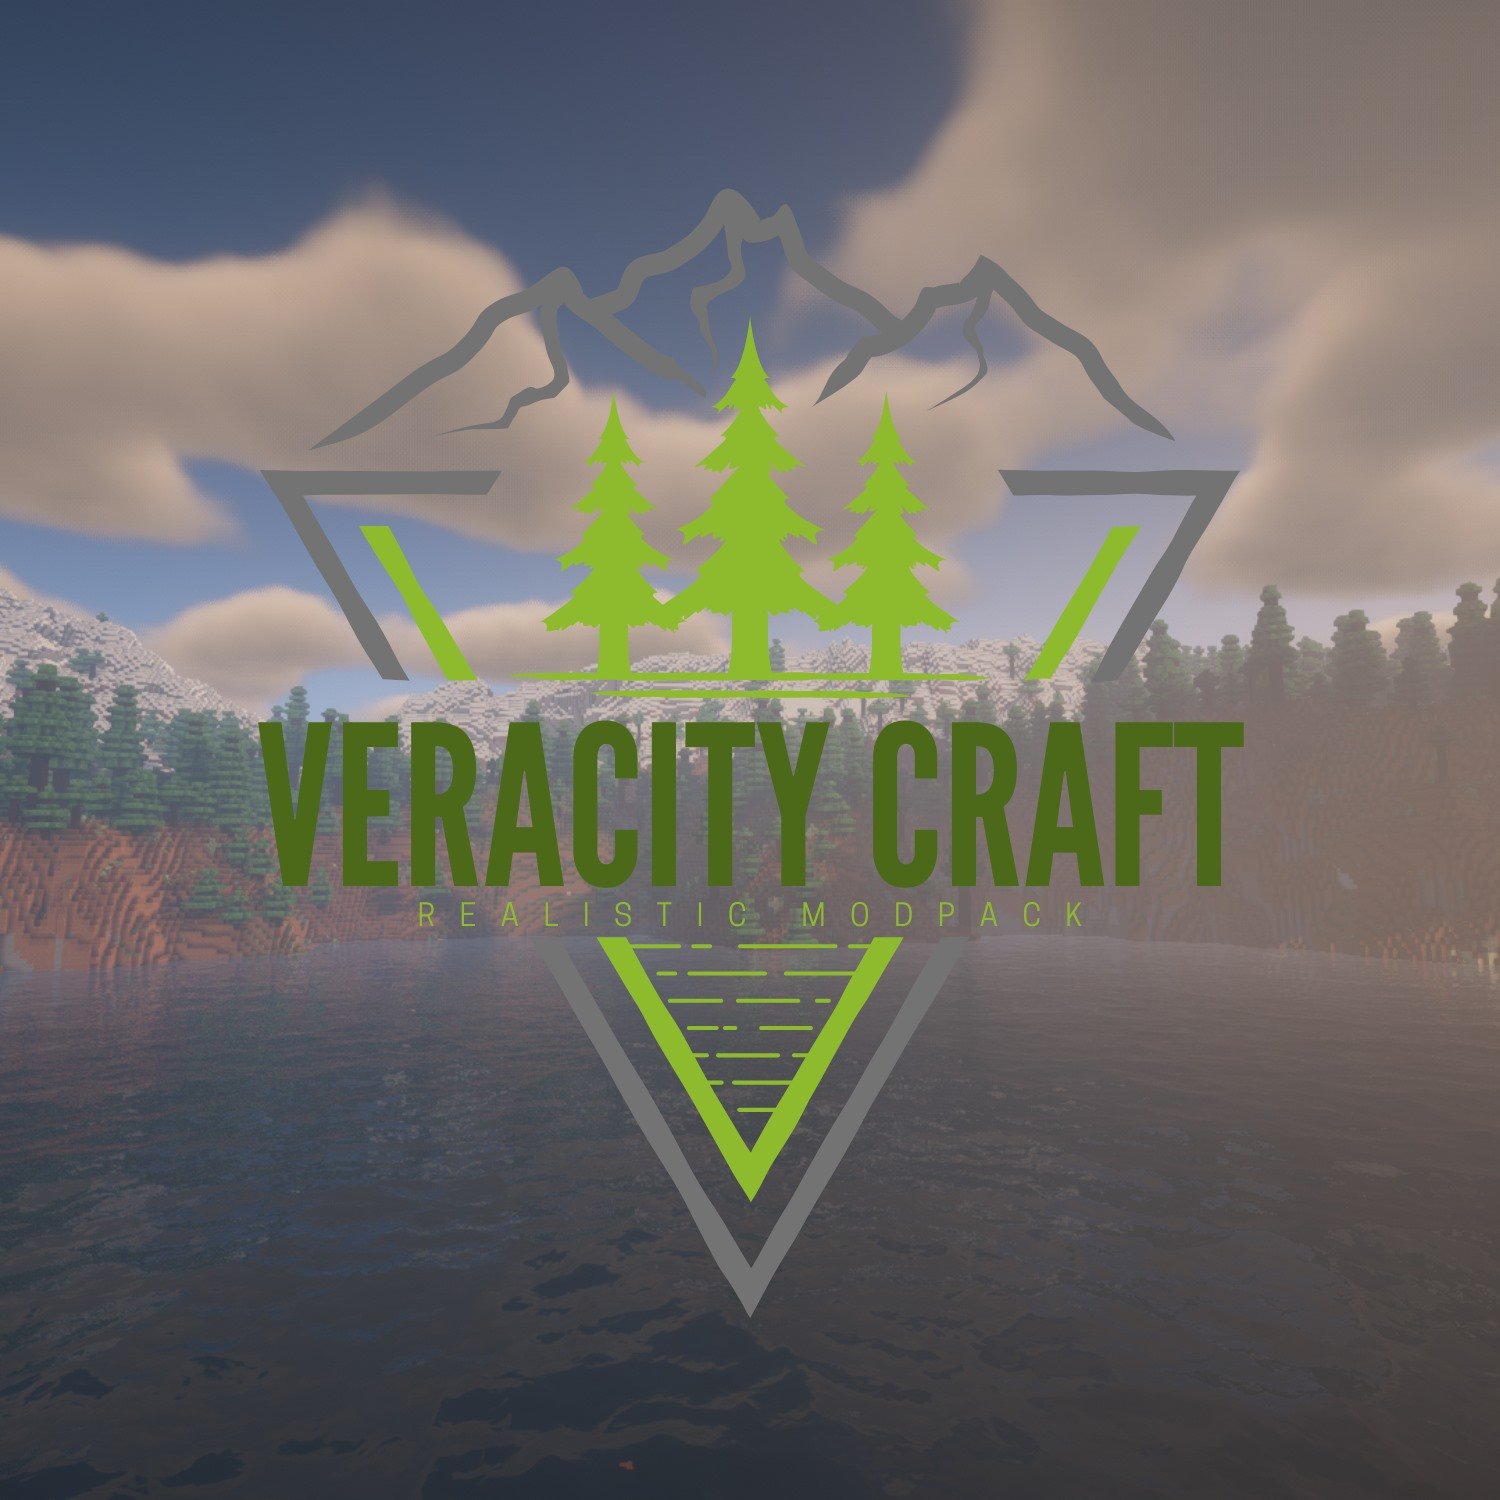 VeracityCraft